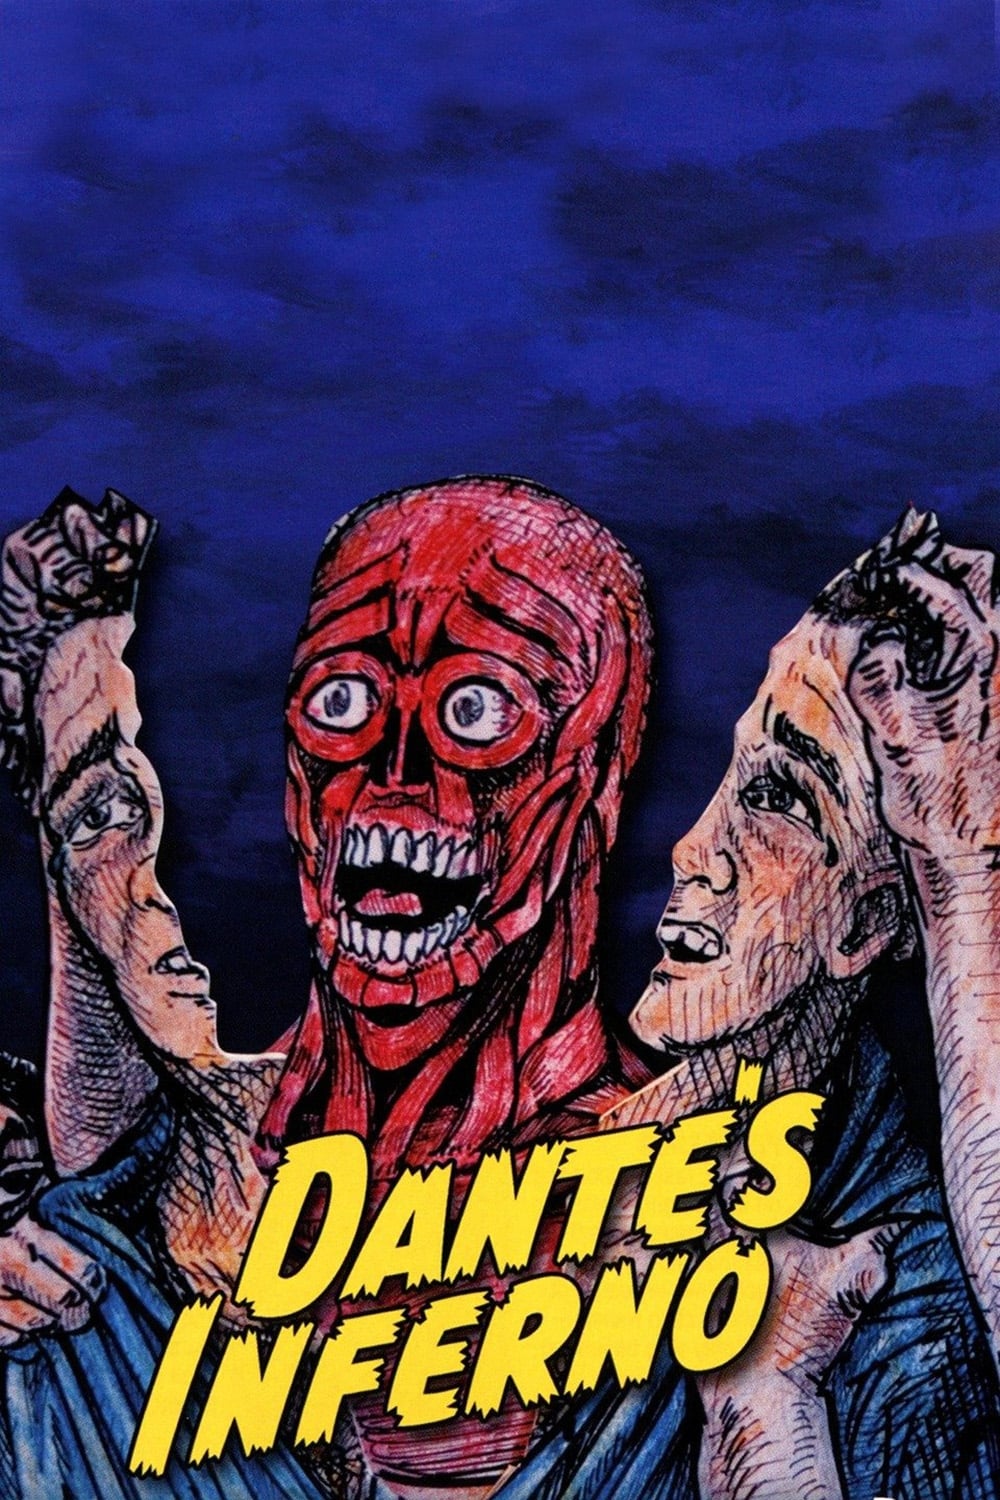 Dante's Inferno (2007)